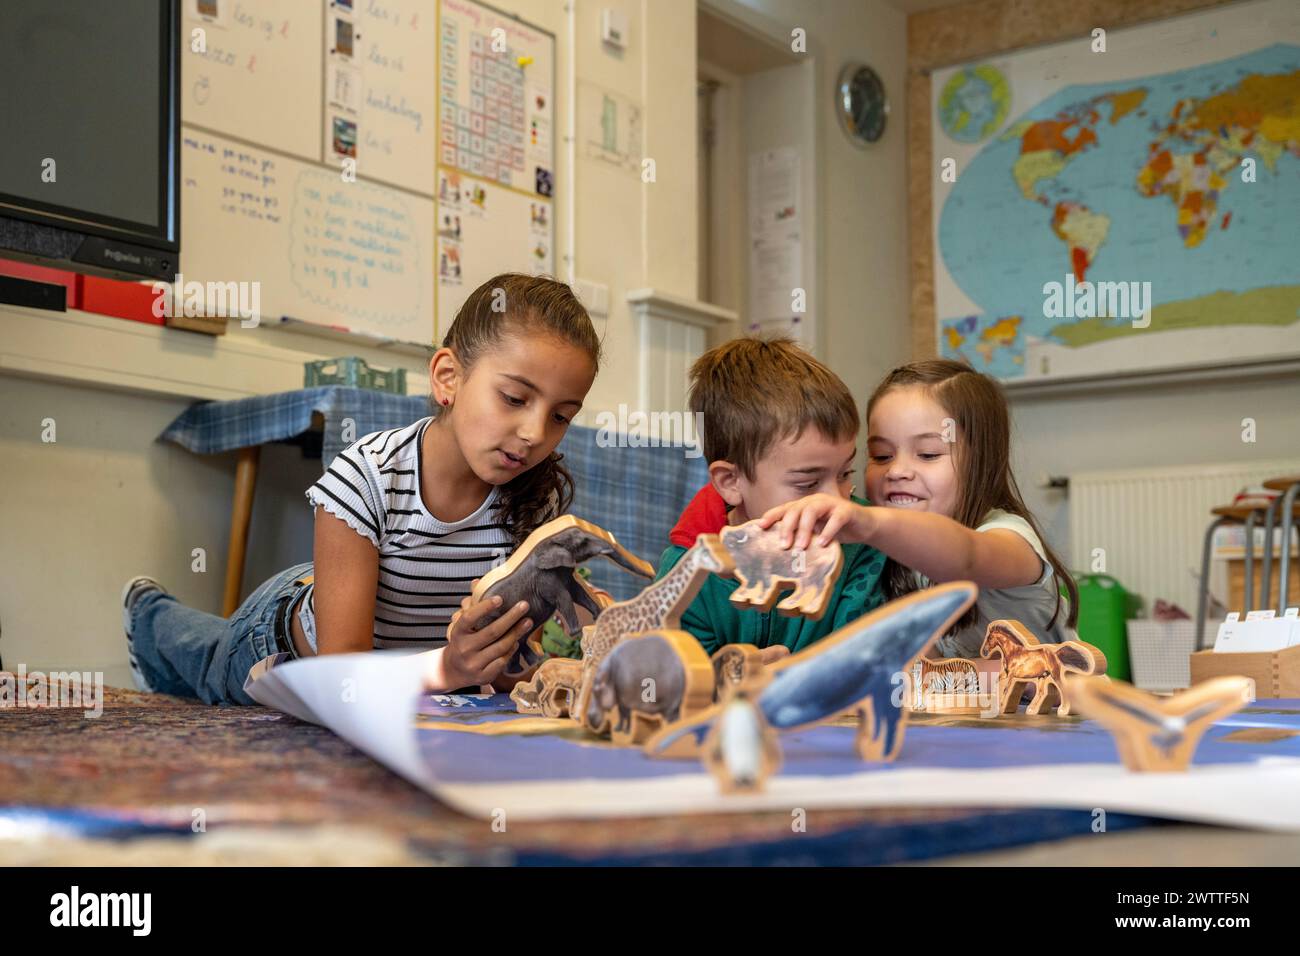 Drei Kinder liegen auf dem Boden und spielen mit verschiedenen Dinosaurier-Spielzeugmodellen, die auf einem Teppich verteilt sind. Im Hintergrund befindet sich eine Weltkarte. Stockfoto